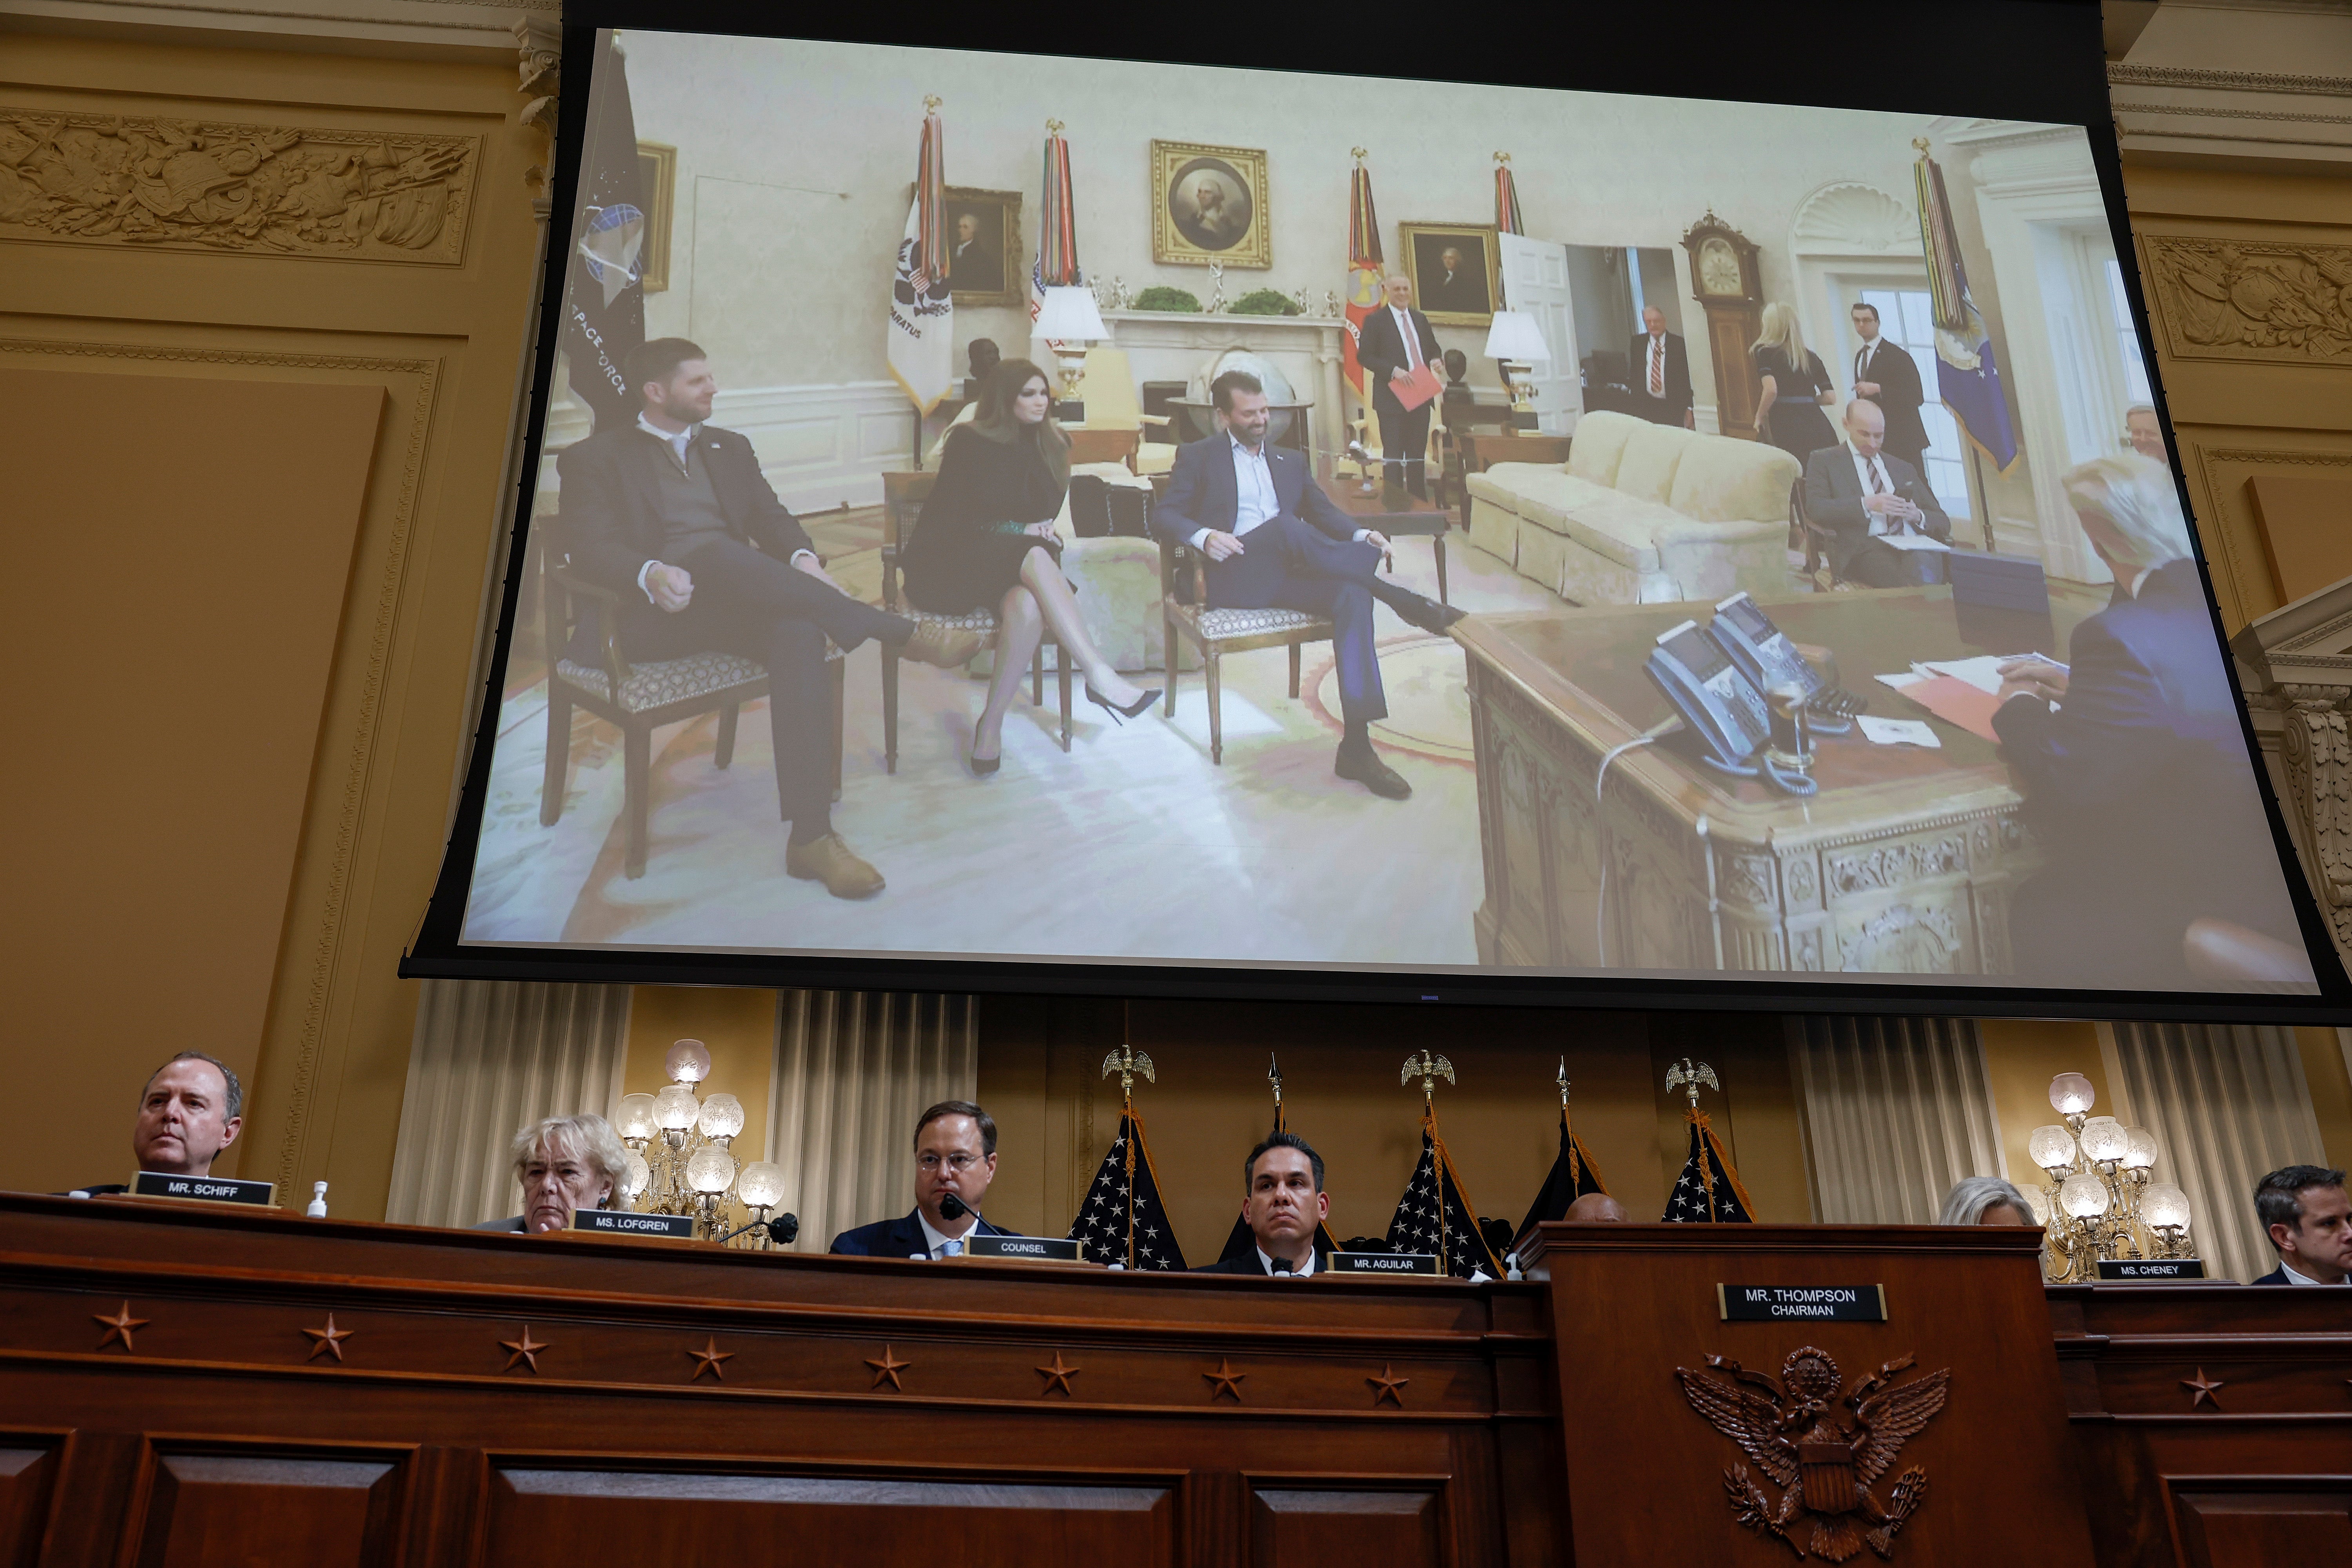 Las audiencias del 6 de enero mostraron fotos de la entonces primera familia en la Oficina Oval en la mañana del ataque al Capitolio